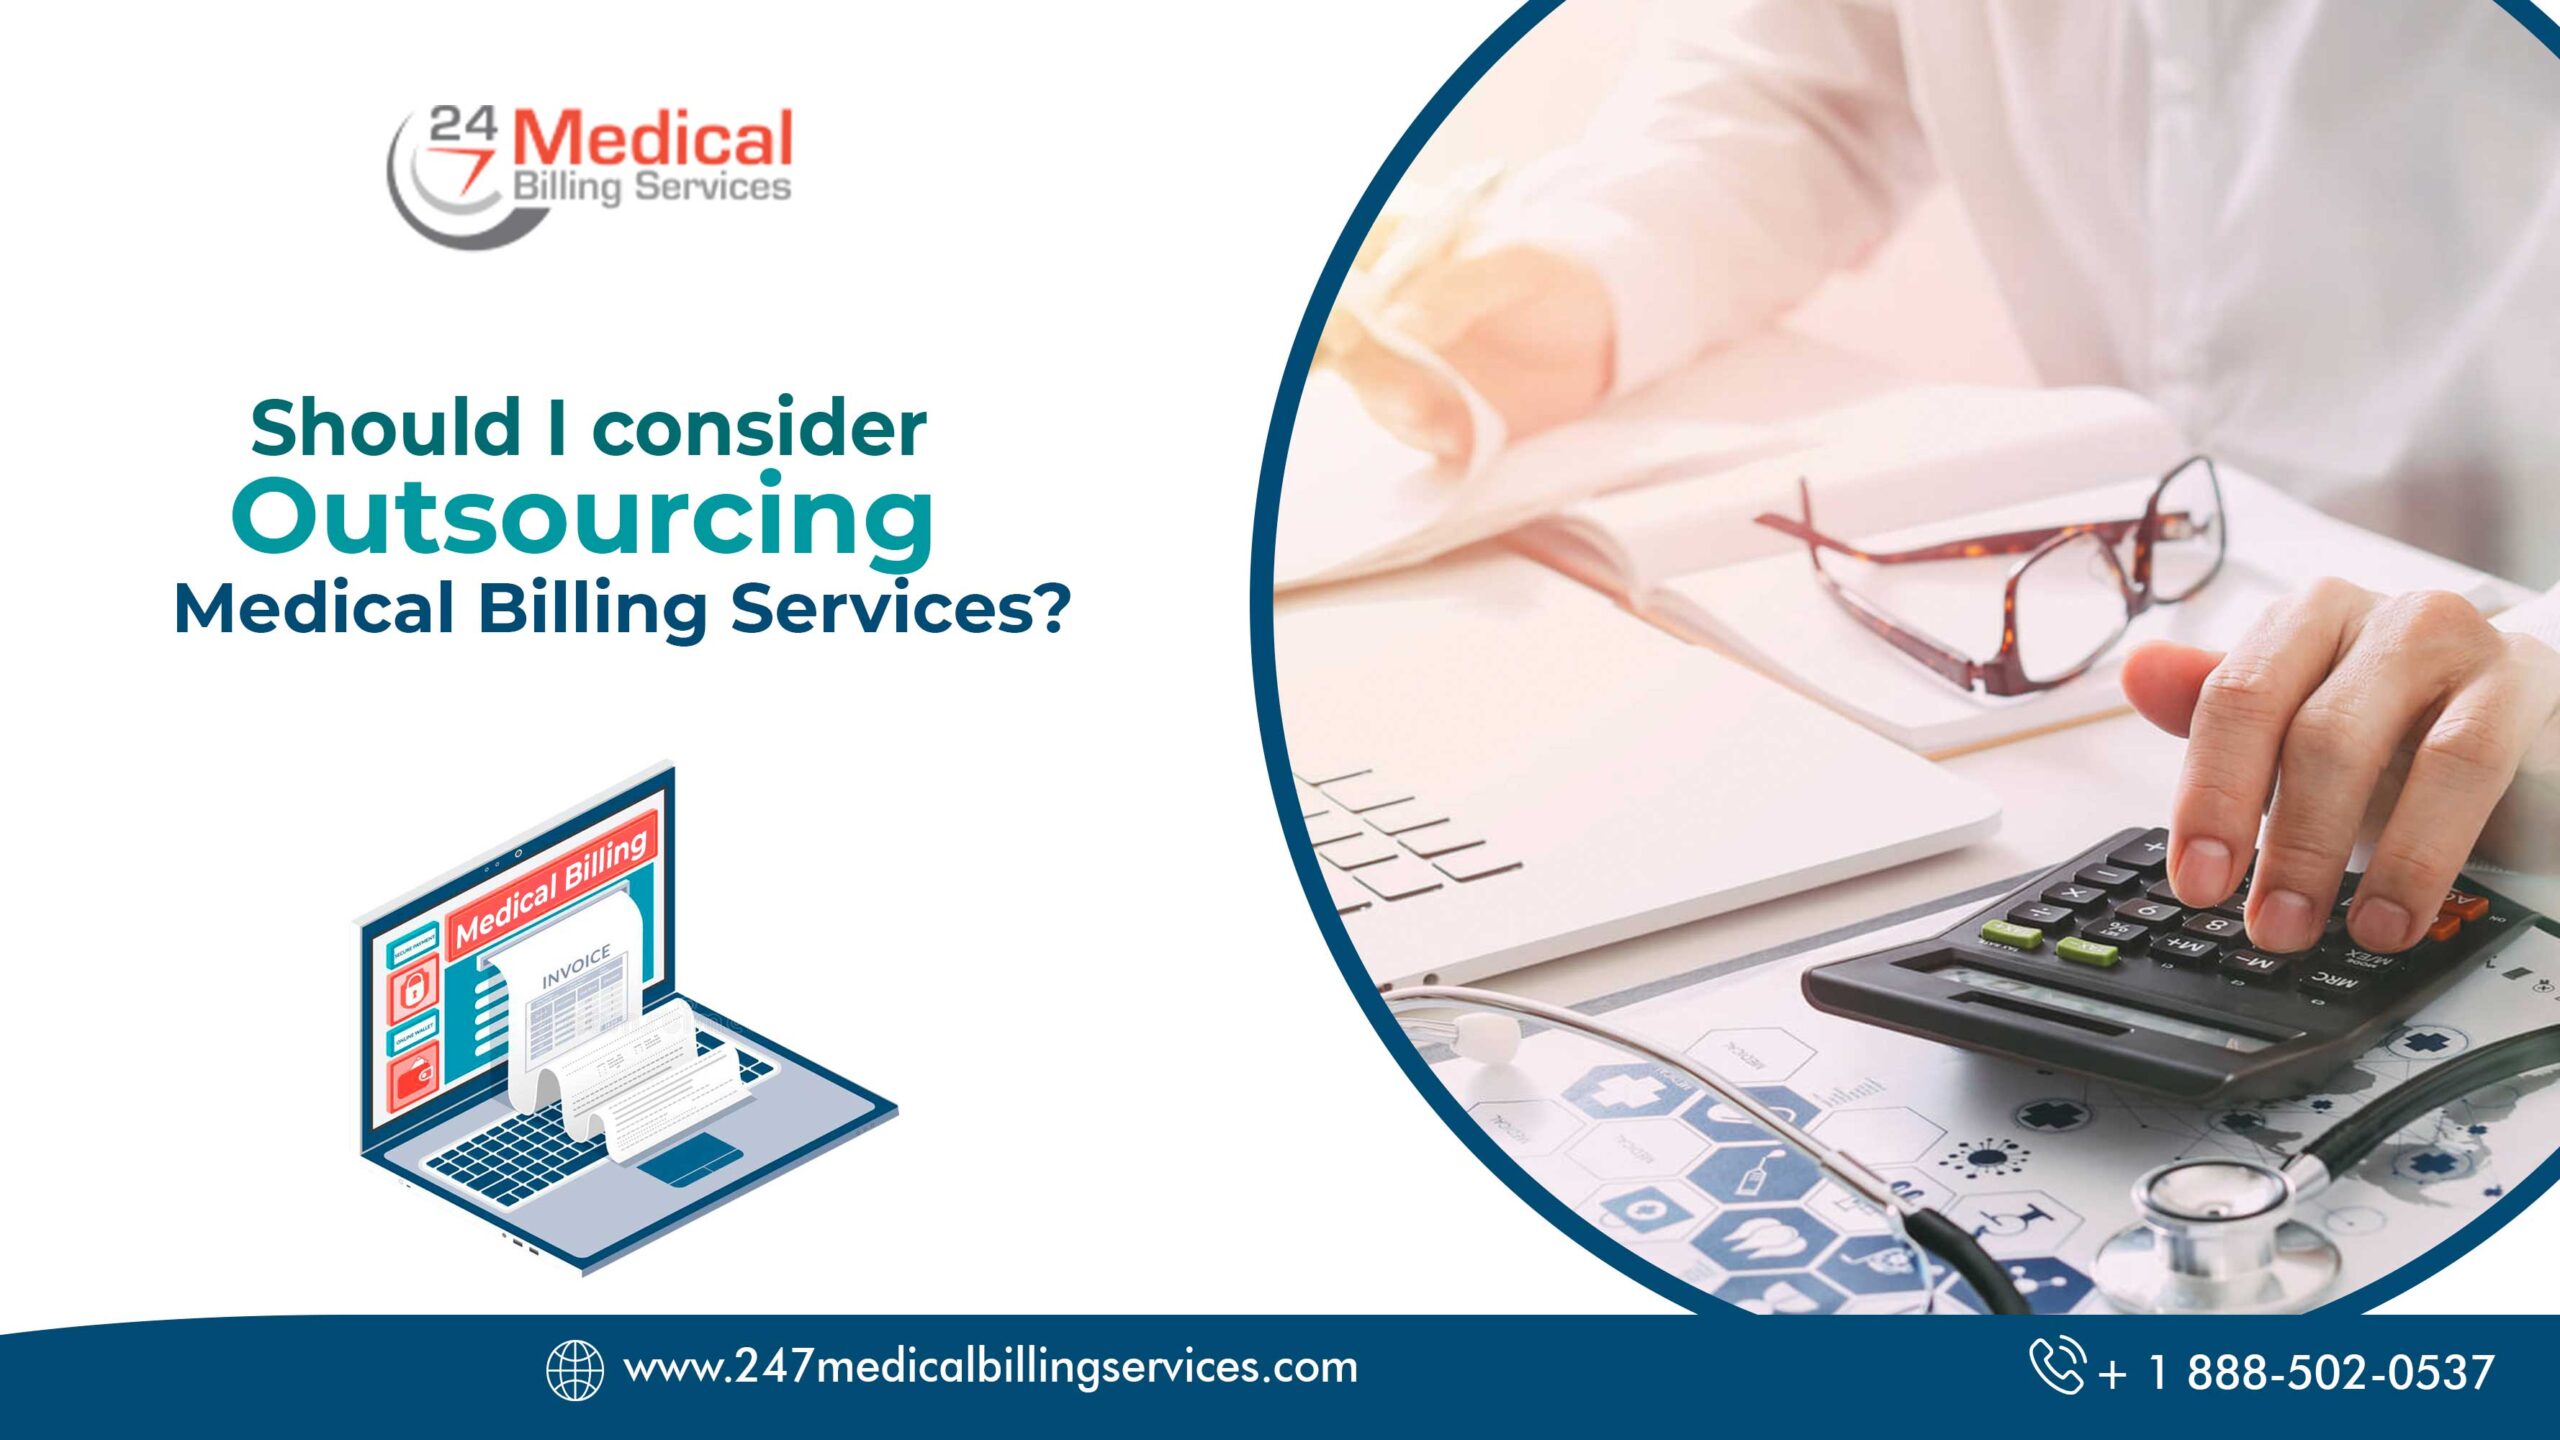  Should I consider Outsourcing Medical Billing Services?